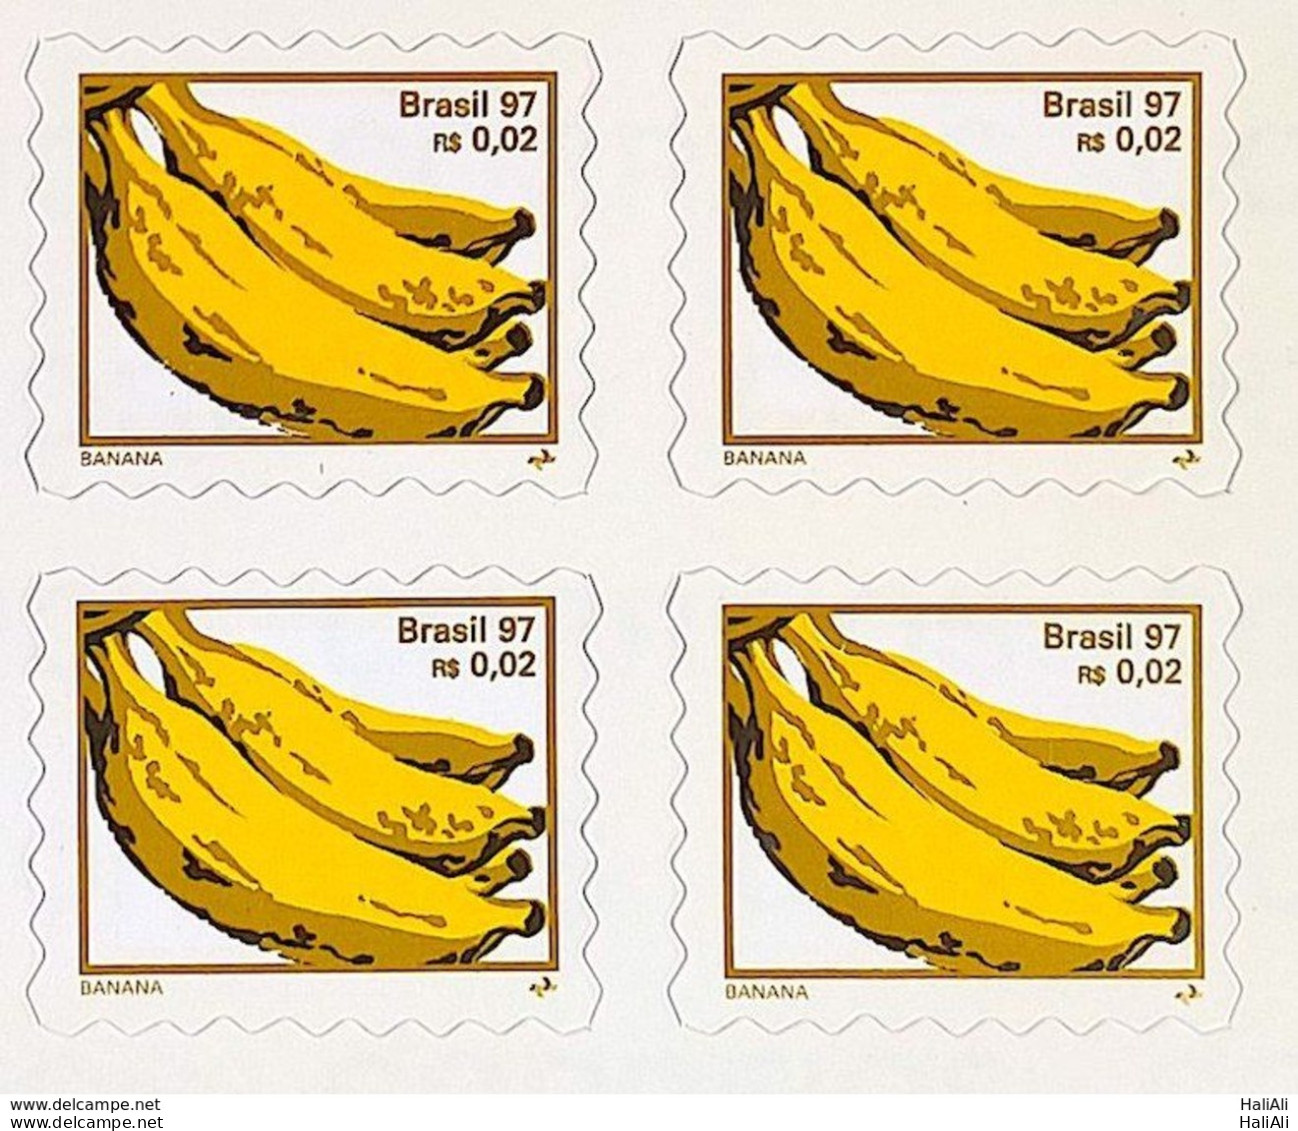 Brazil Regular Stamp 750 B3 Banana Fruit Perce In Wave 1998 Block Of 4 - Unused Stamps